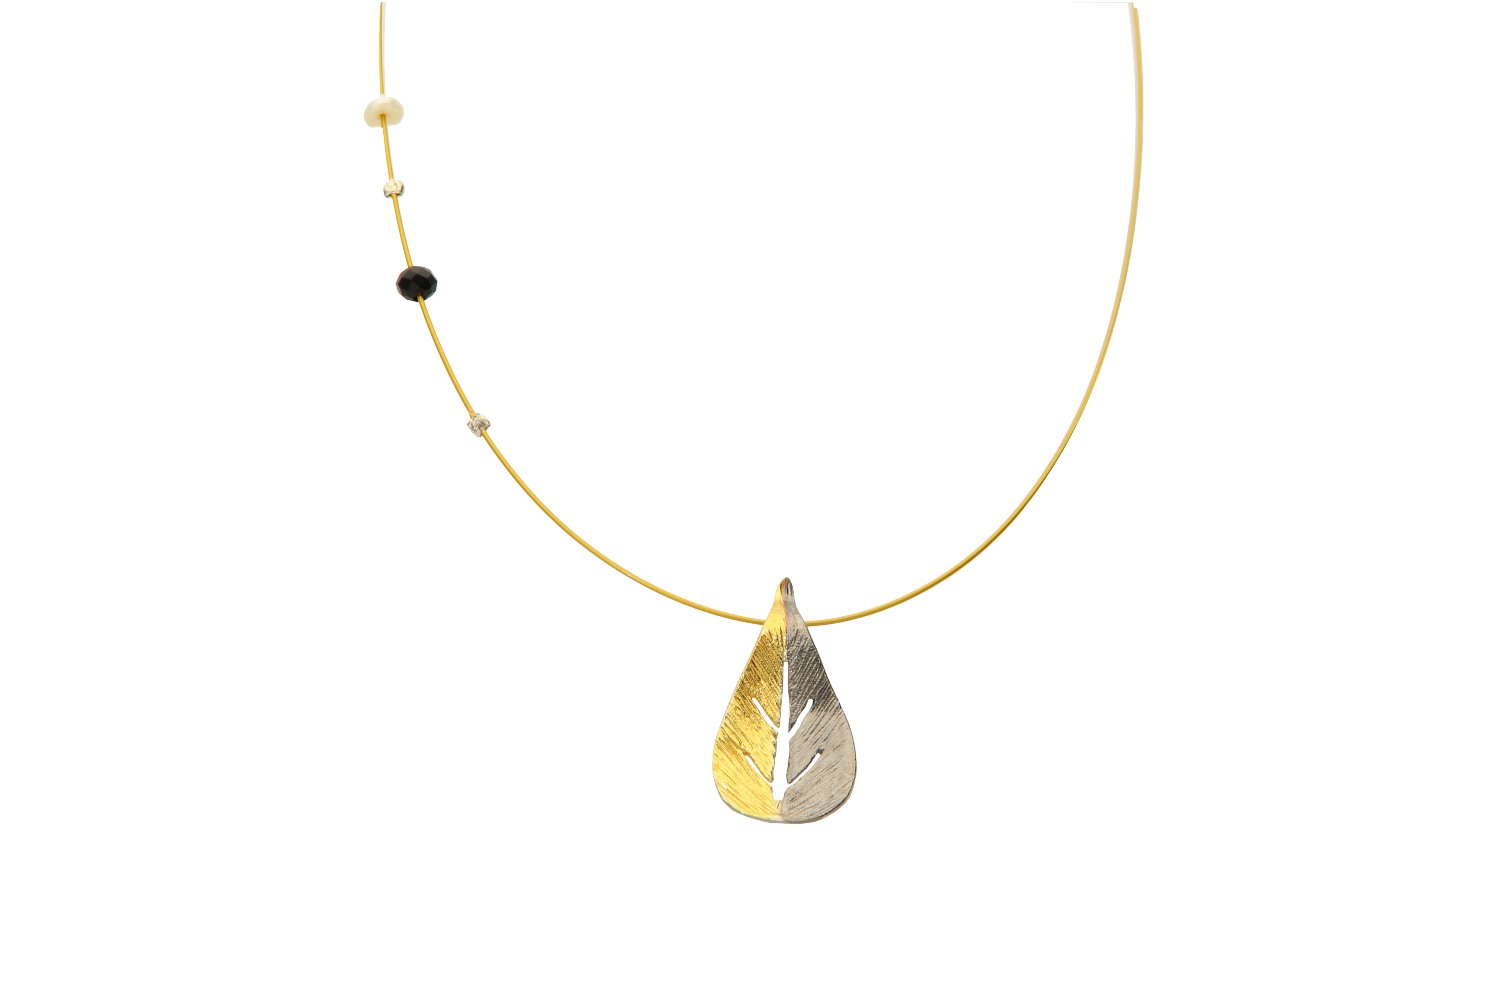 Κολιέ σε ασήμι 925° με μοτίφ στρογγυλό διπλό, στο κέντρο επιχρυσωμένο και γύρω μαυρισμένο, με χρυσαφί ατσαλόσυρμα